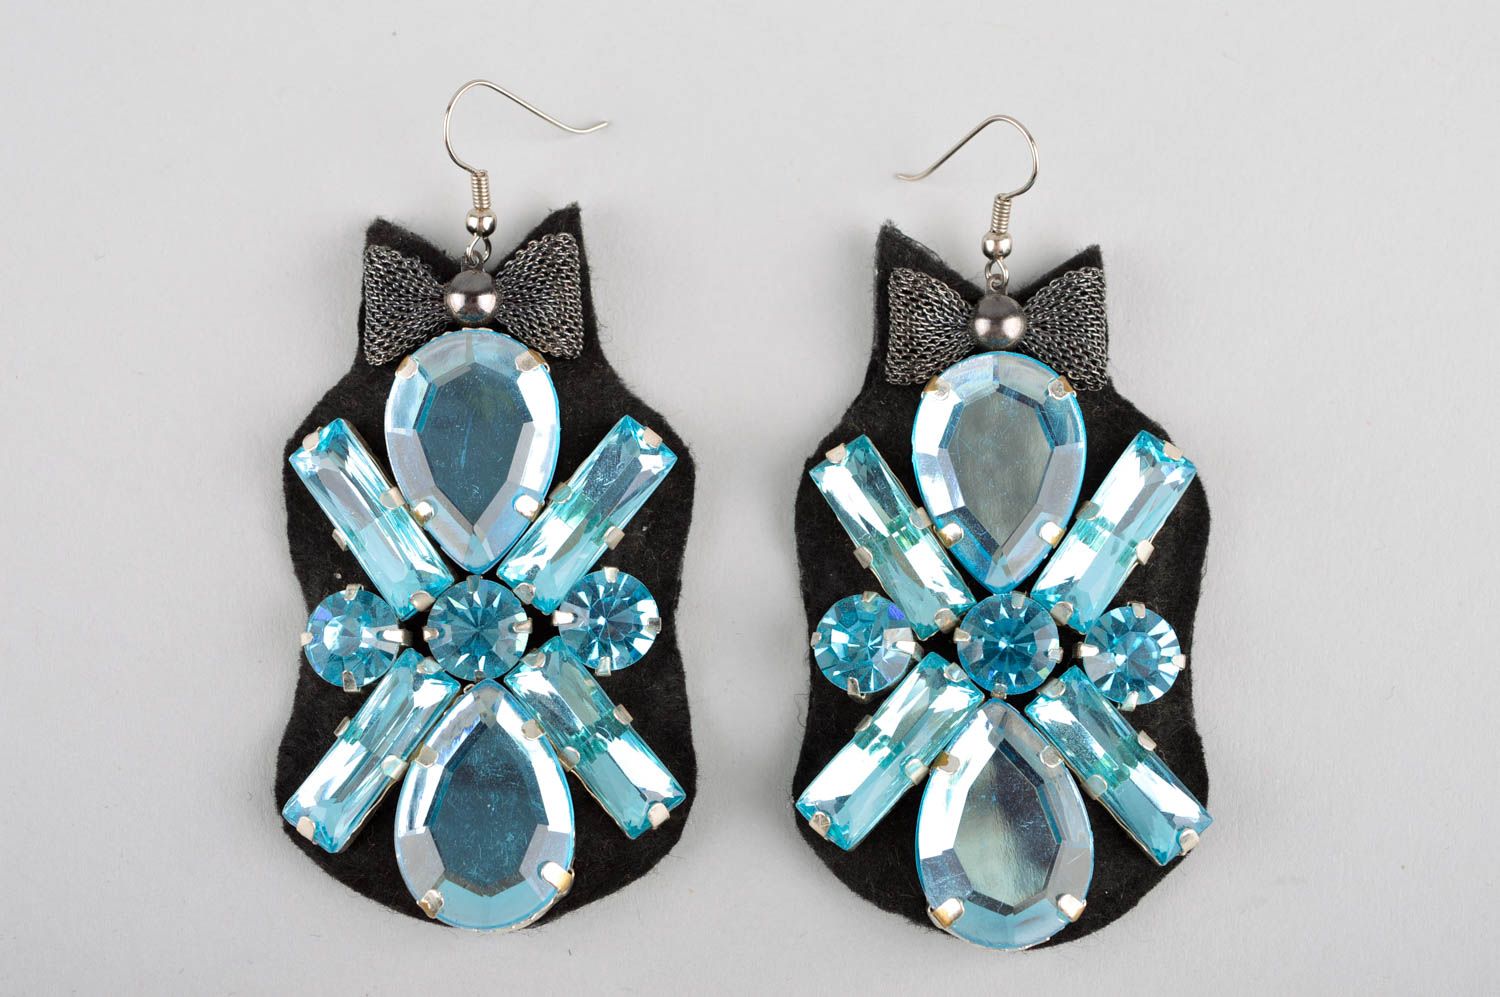 Crystal earrings stylish earrings handmade jewelry evening earrings for women photo 3